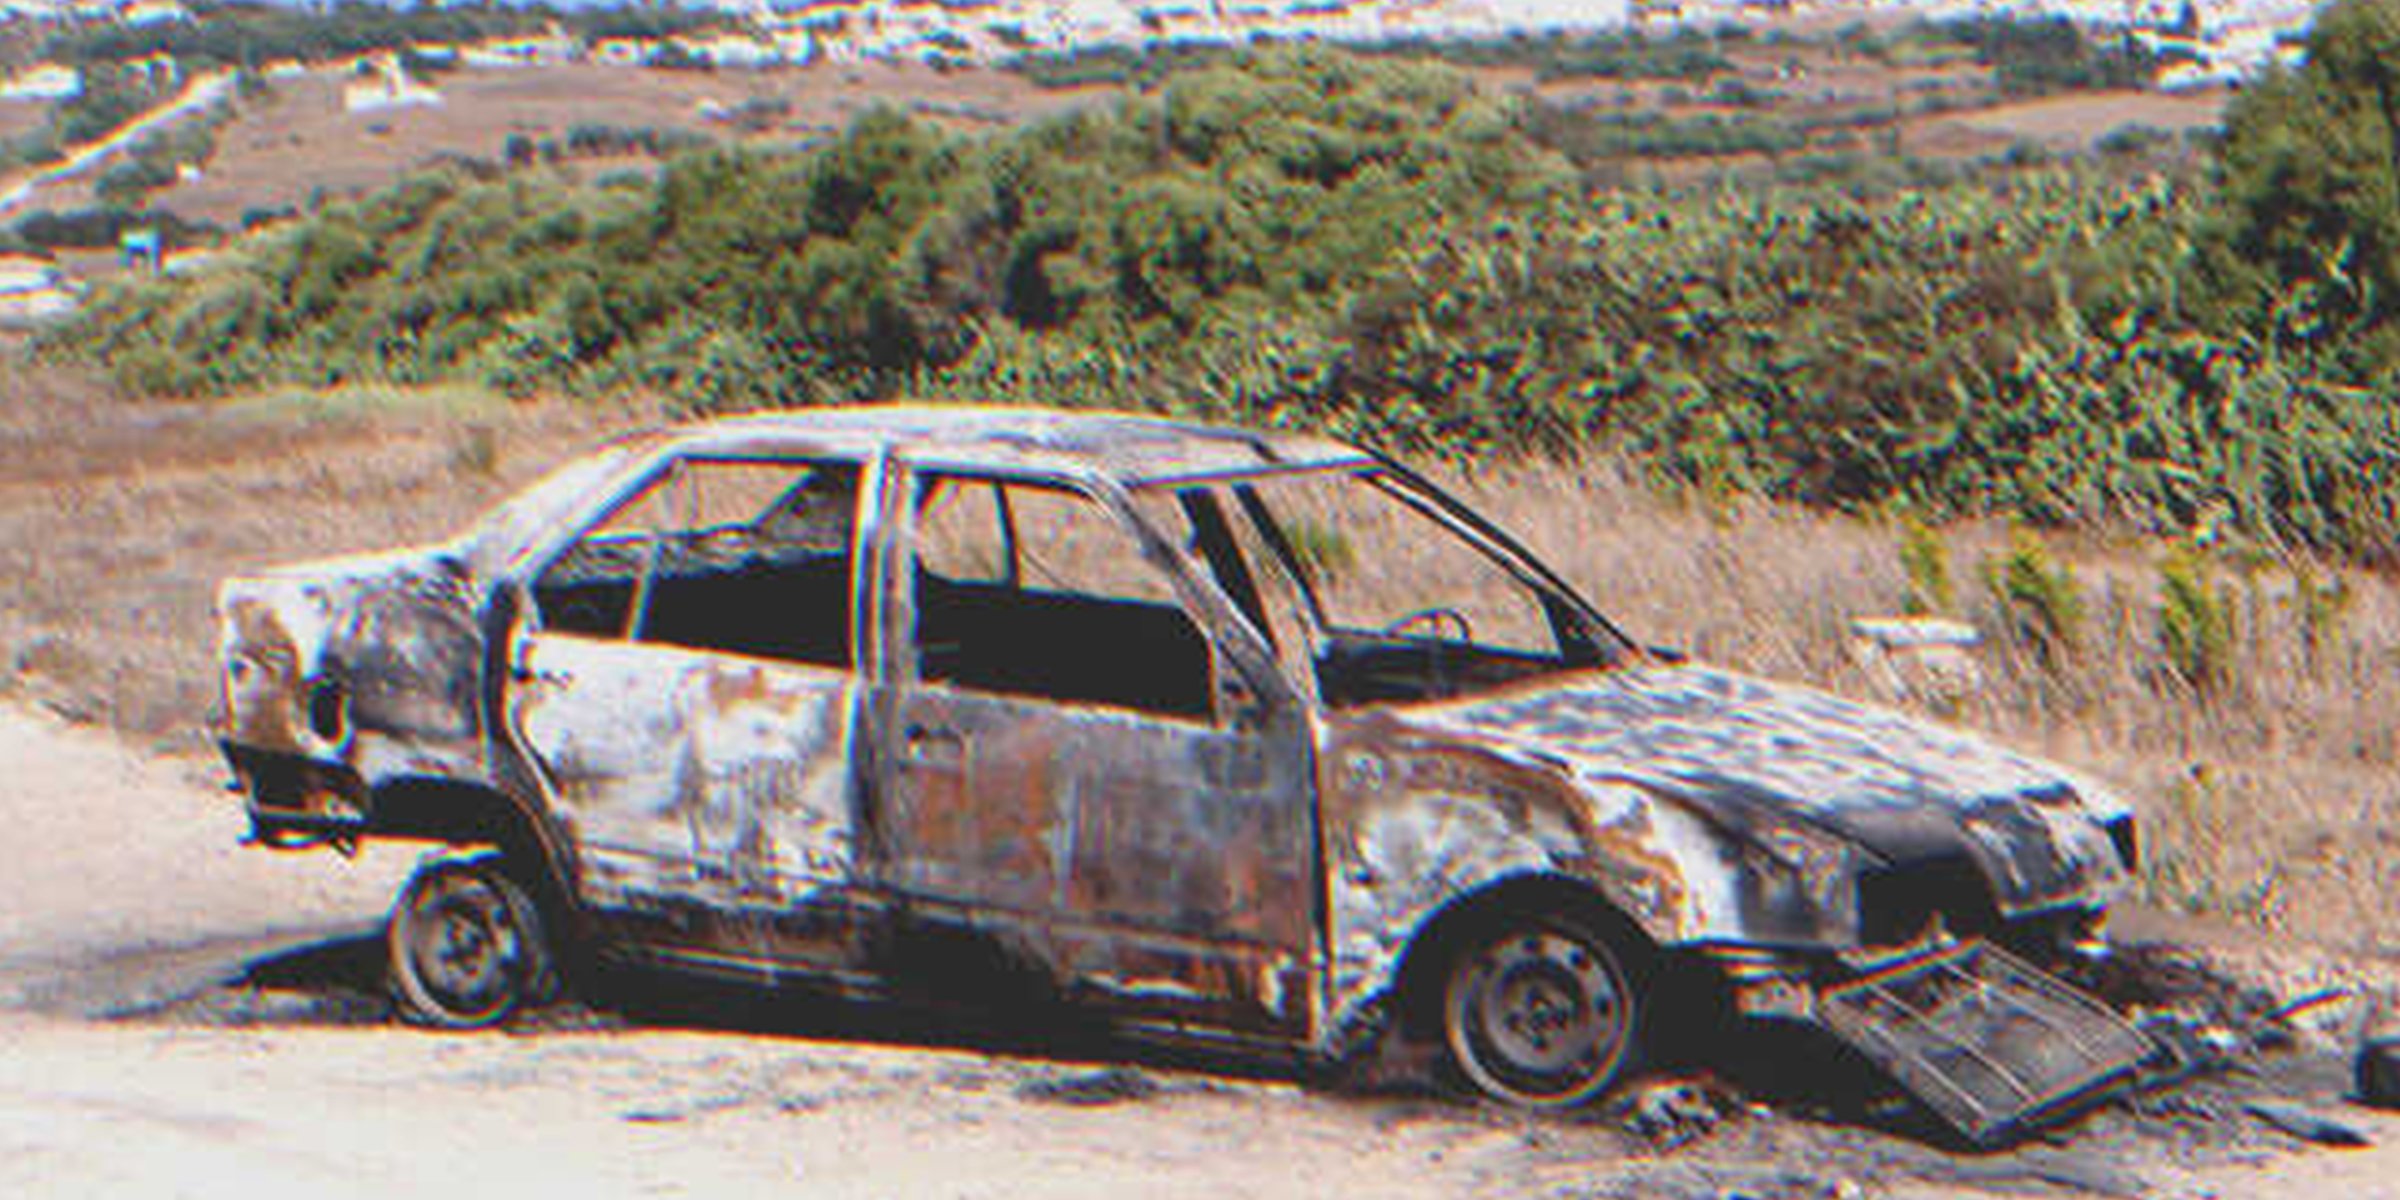 Ein abgebranntes Fahrzeug | Quelle: Shutterstock